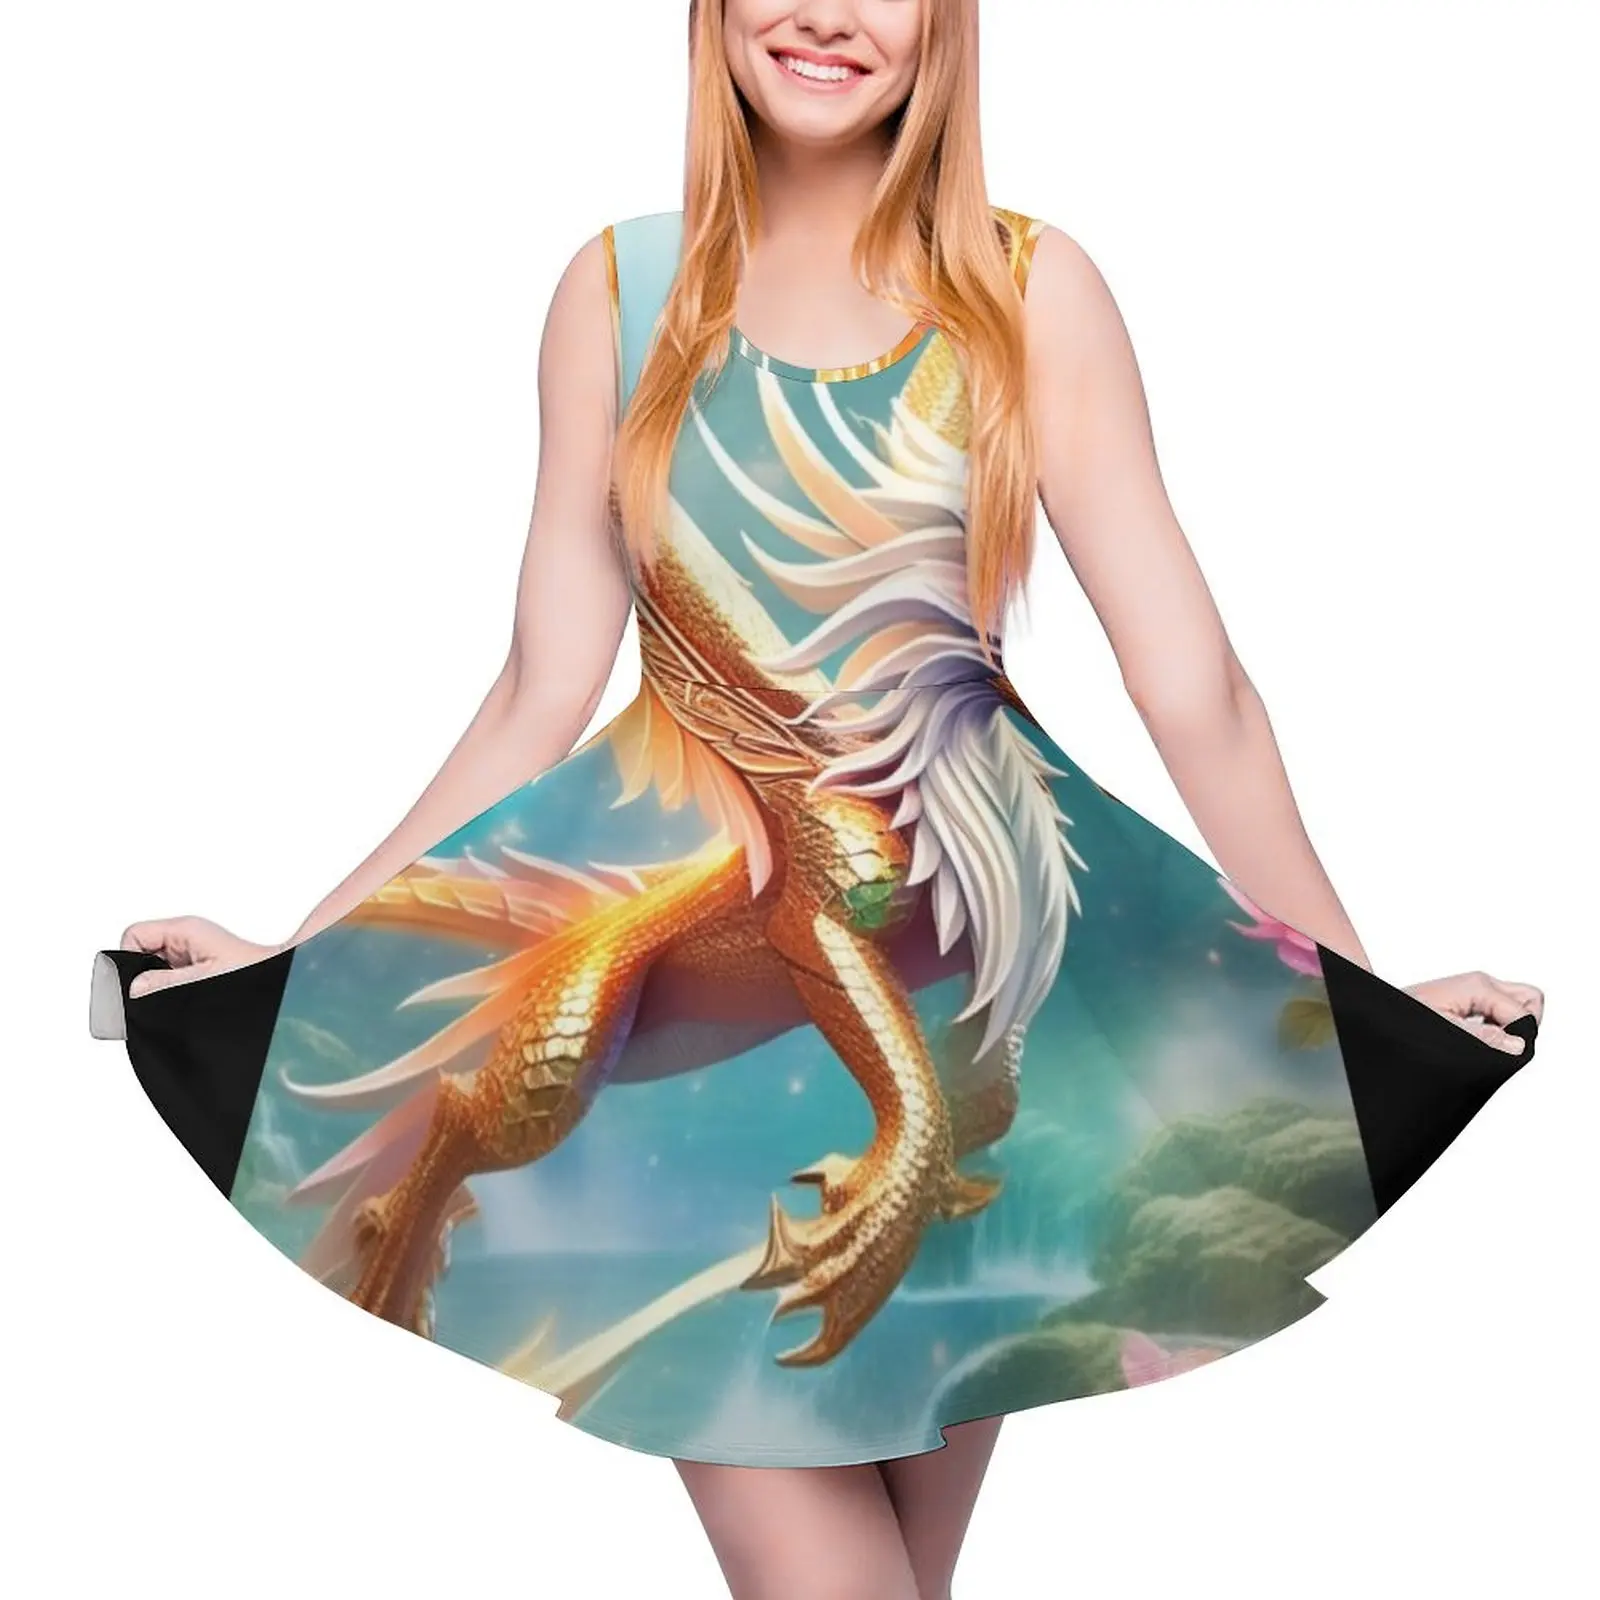 

Платье без рукавов с драконом женское, элегантная вечерняя одежда, роскошная юбка в стиле Звезд, летнее платье